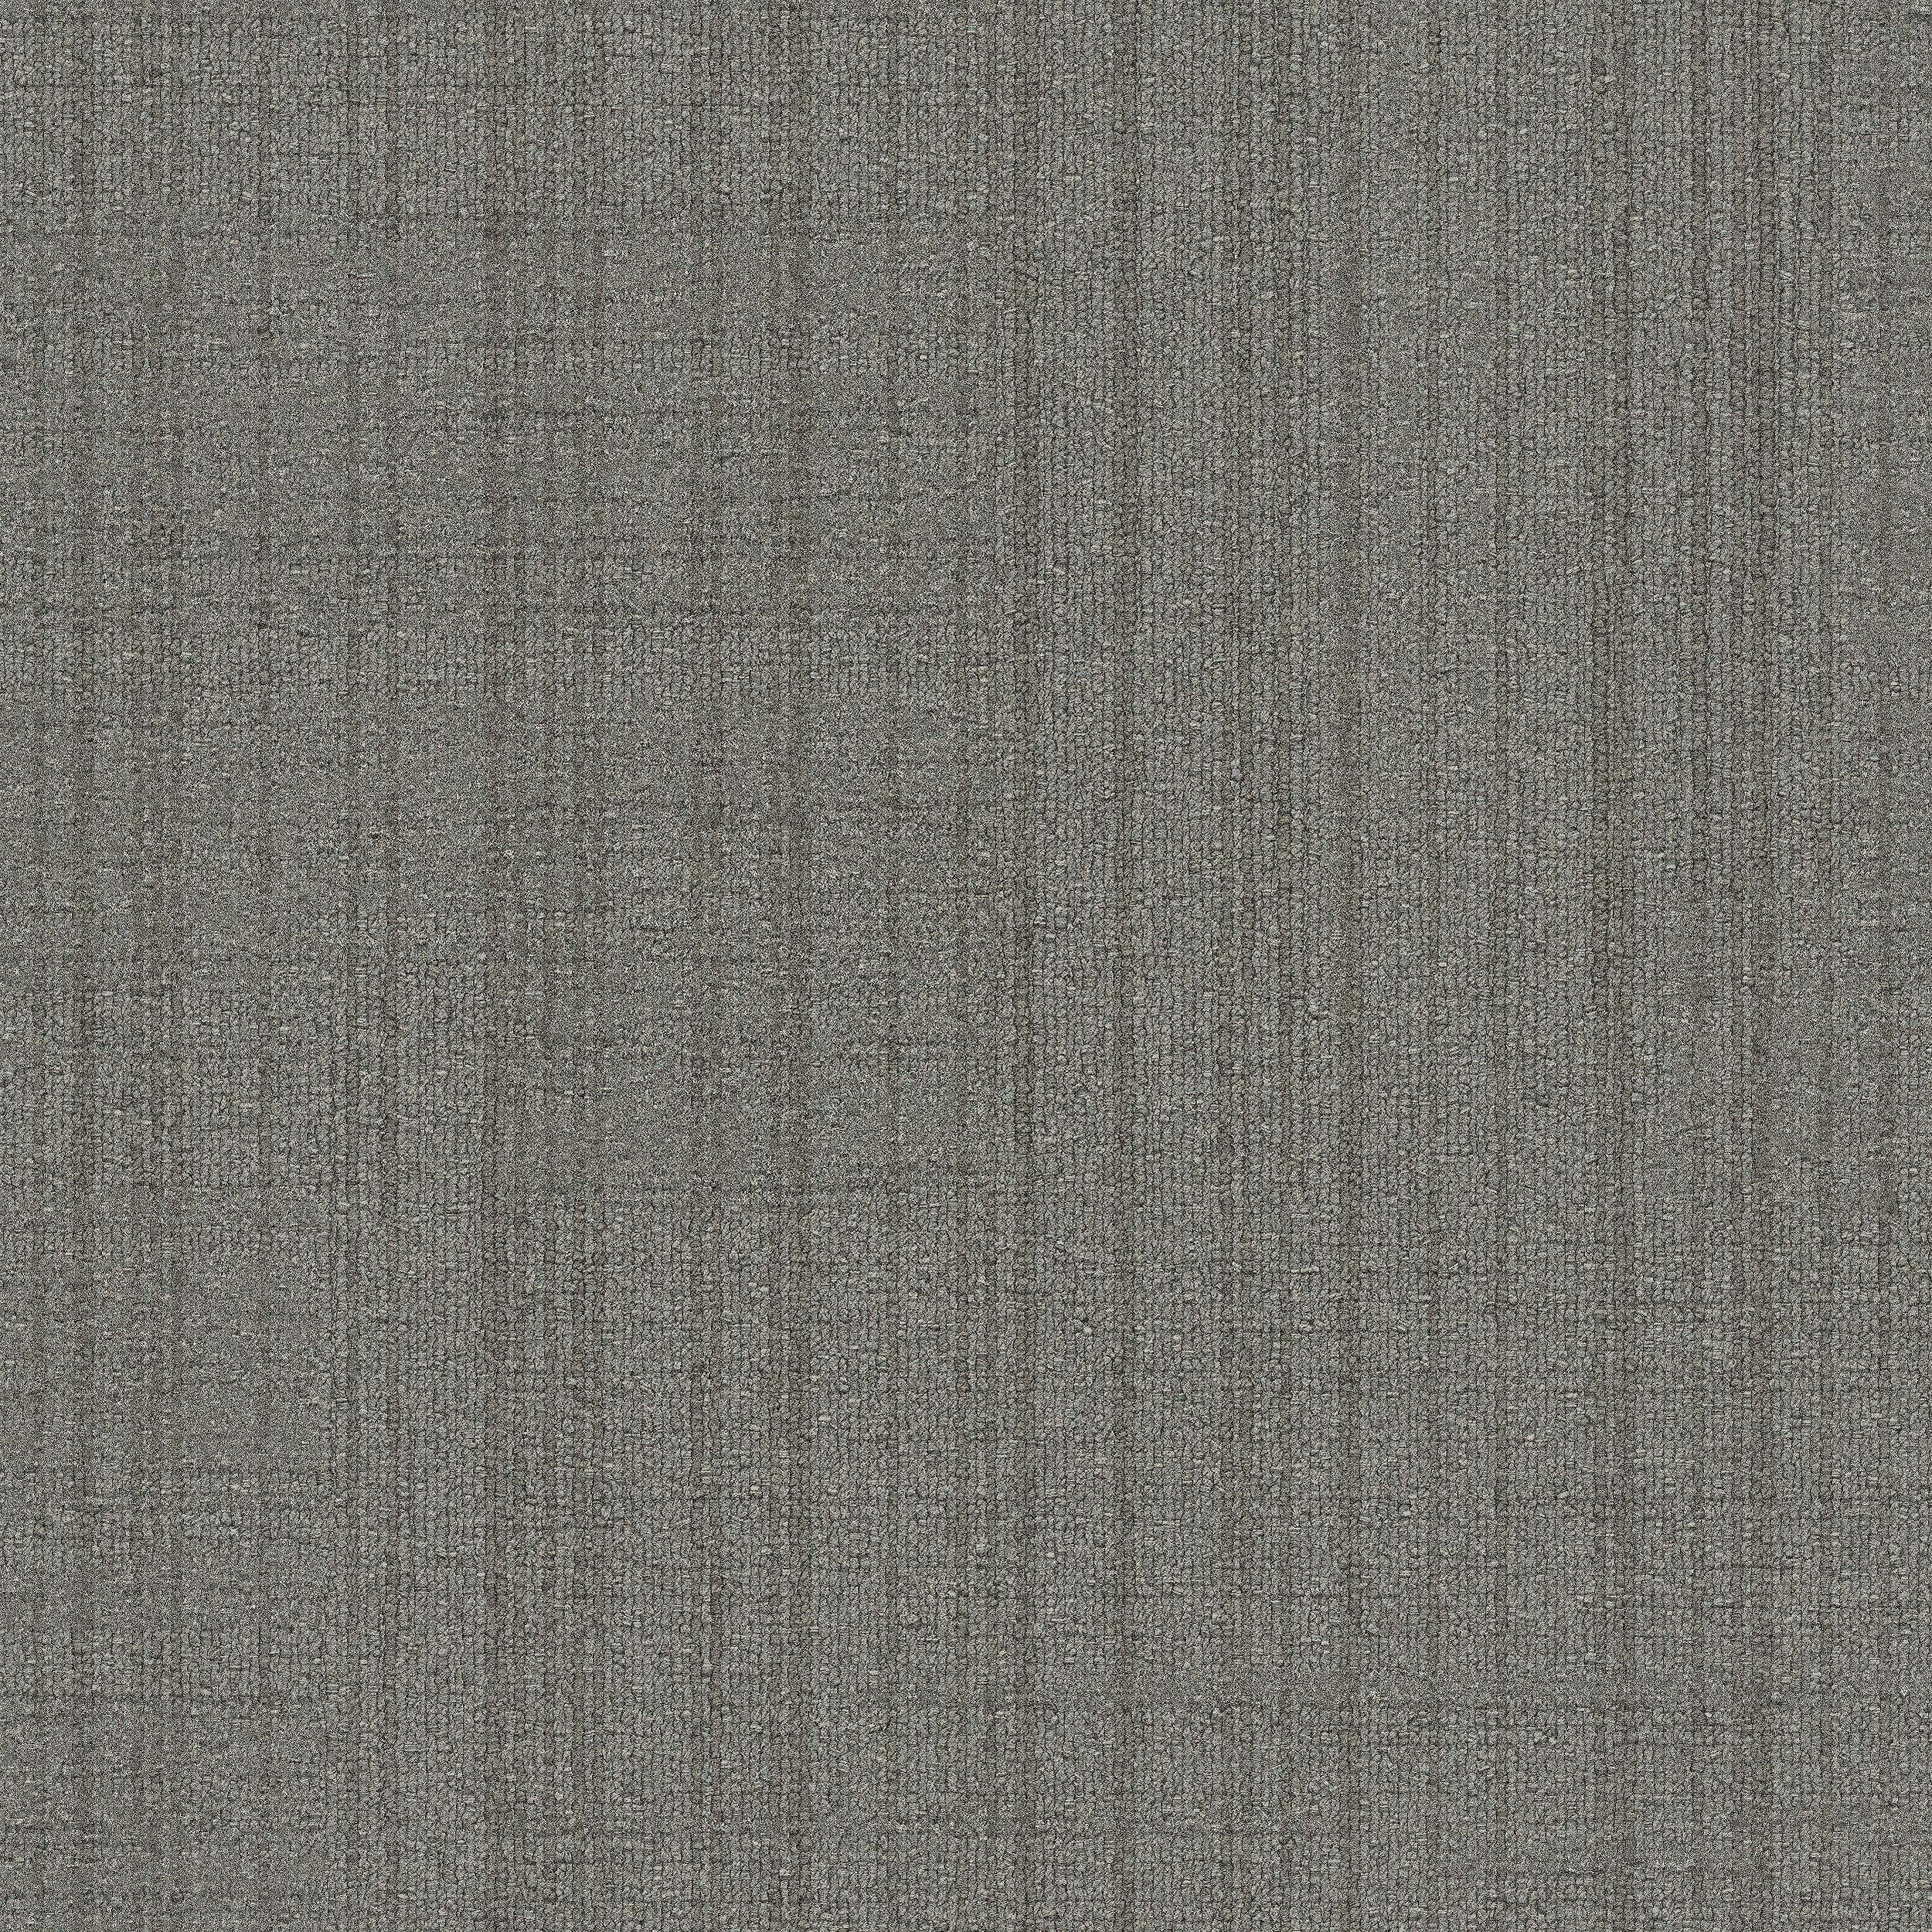 Striation Carpet Tile In Fog imagen número 4